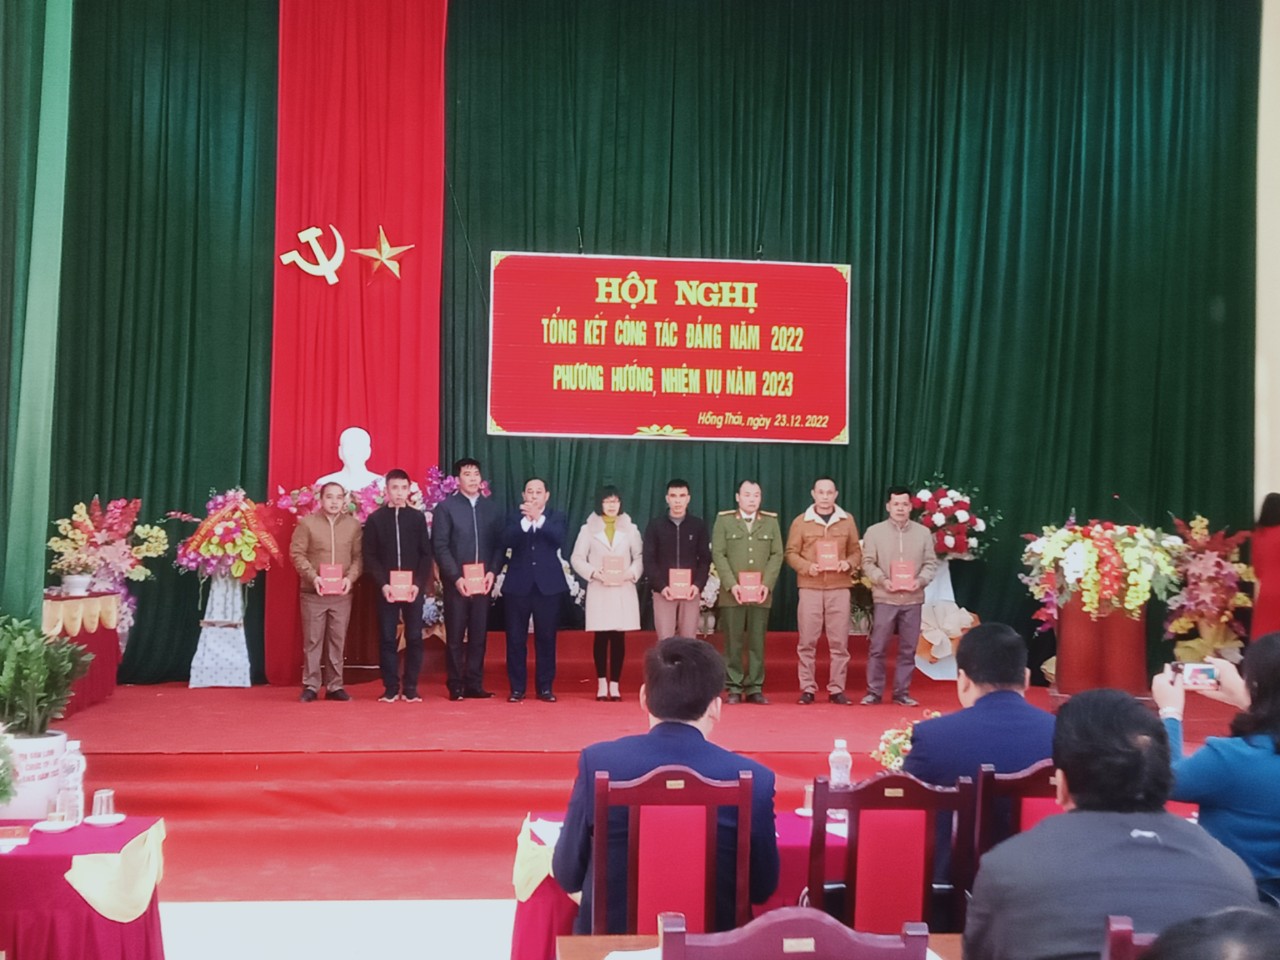 Đồng chí Lương Hoàng Đựng, Bí thư Đảng ủy, Chủ tịch UBND xã tặng giấy khen cho các cá nhân, tập thể